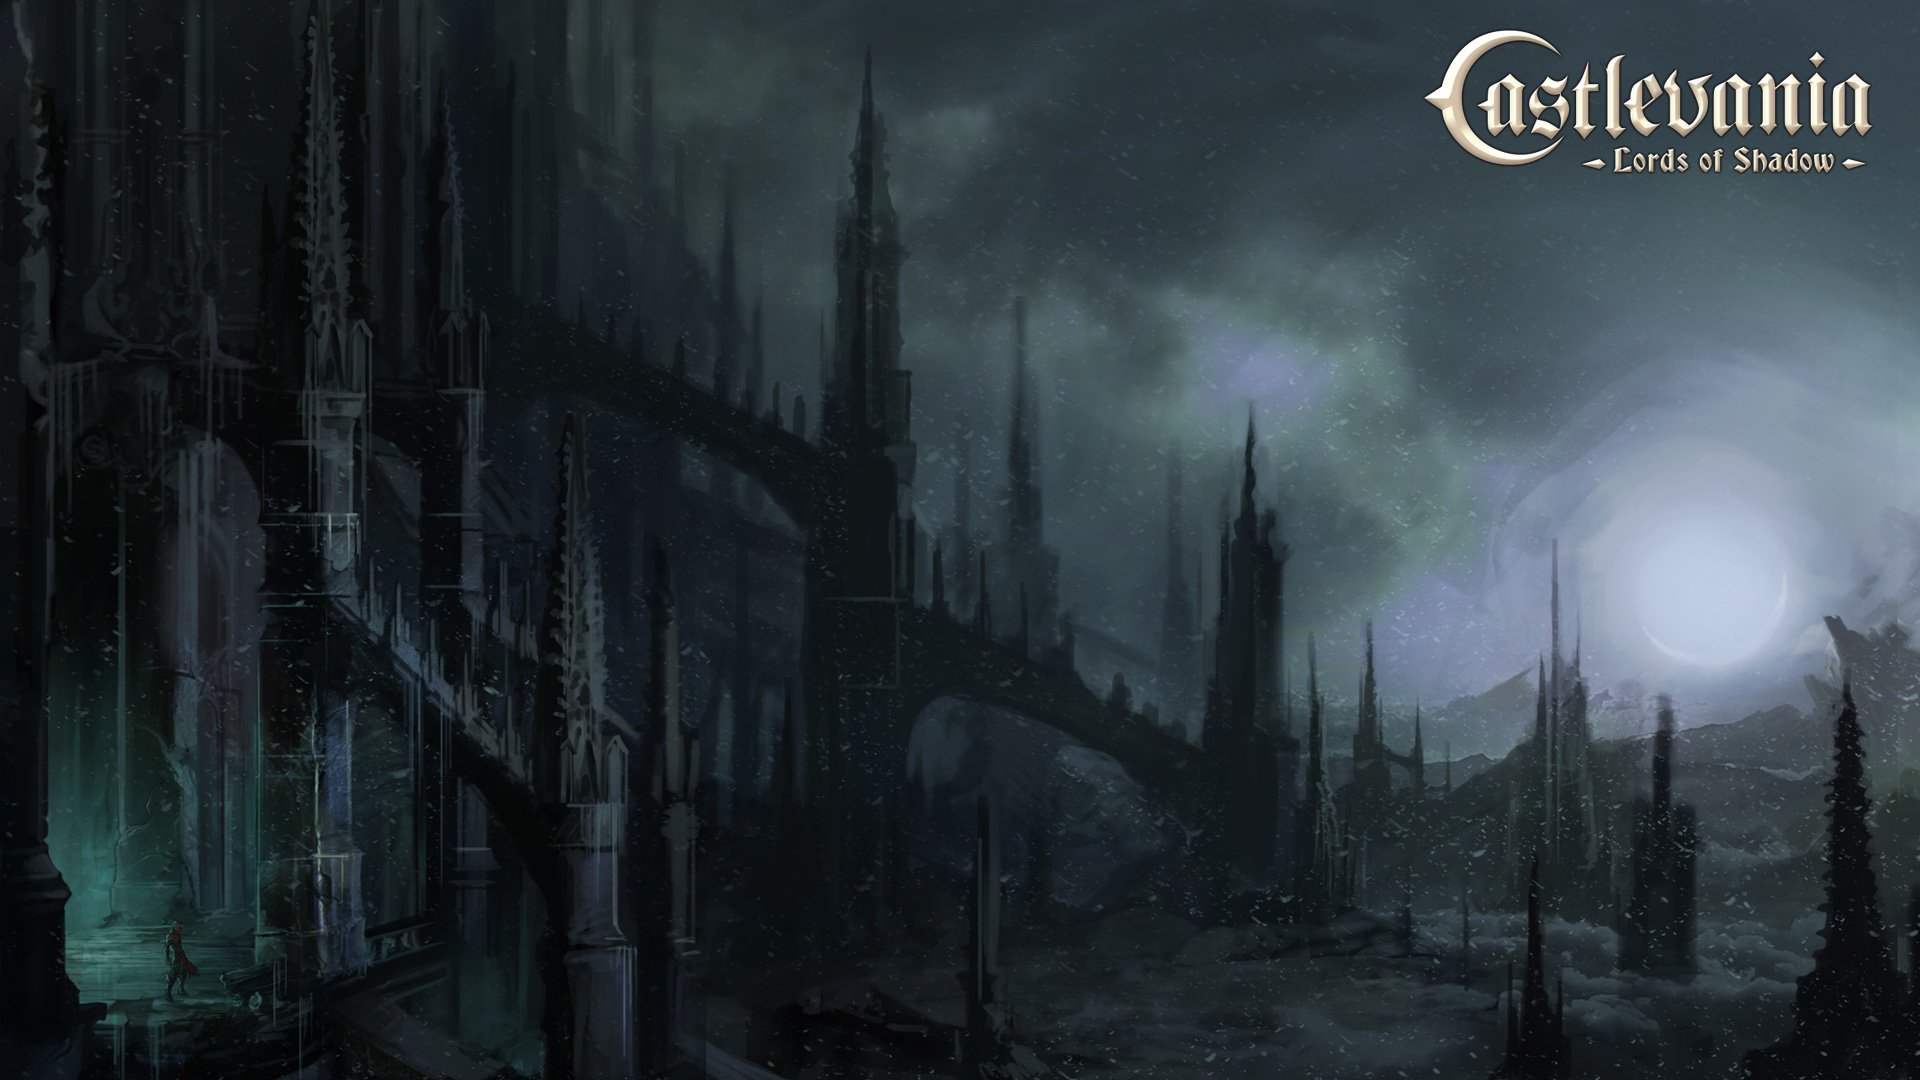 Castlevania, Castlevania: Lords of Shadow Wallpaper